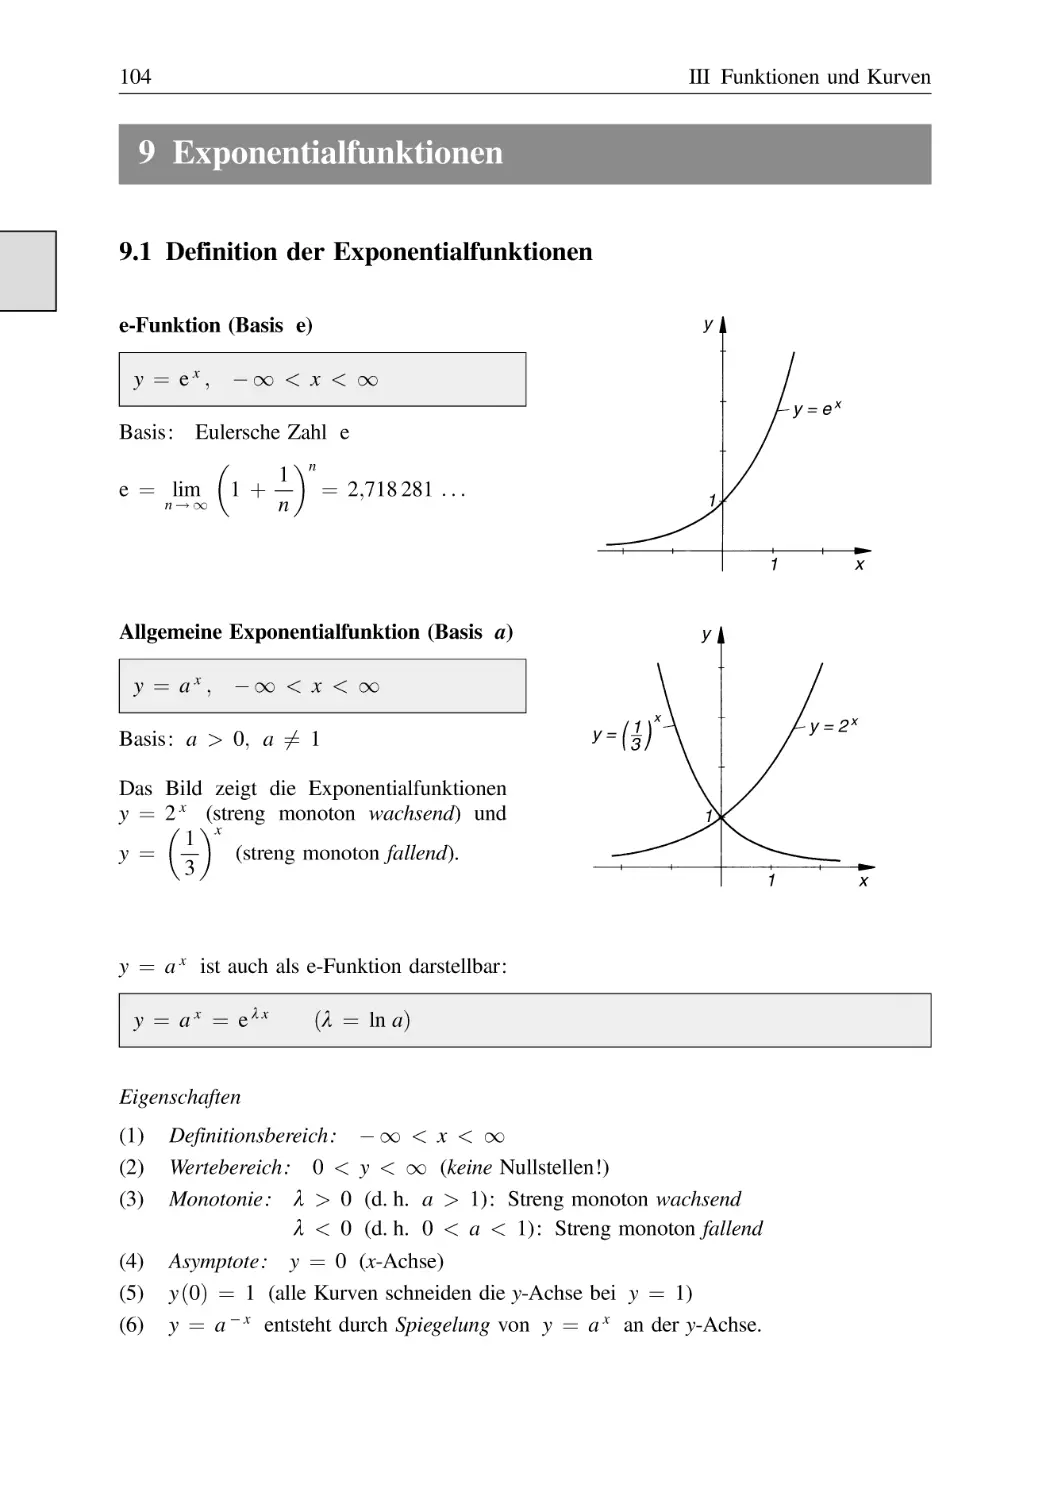 9 Exponentialfunktionen
9.1 Definition der Exponentialfunktionen